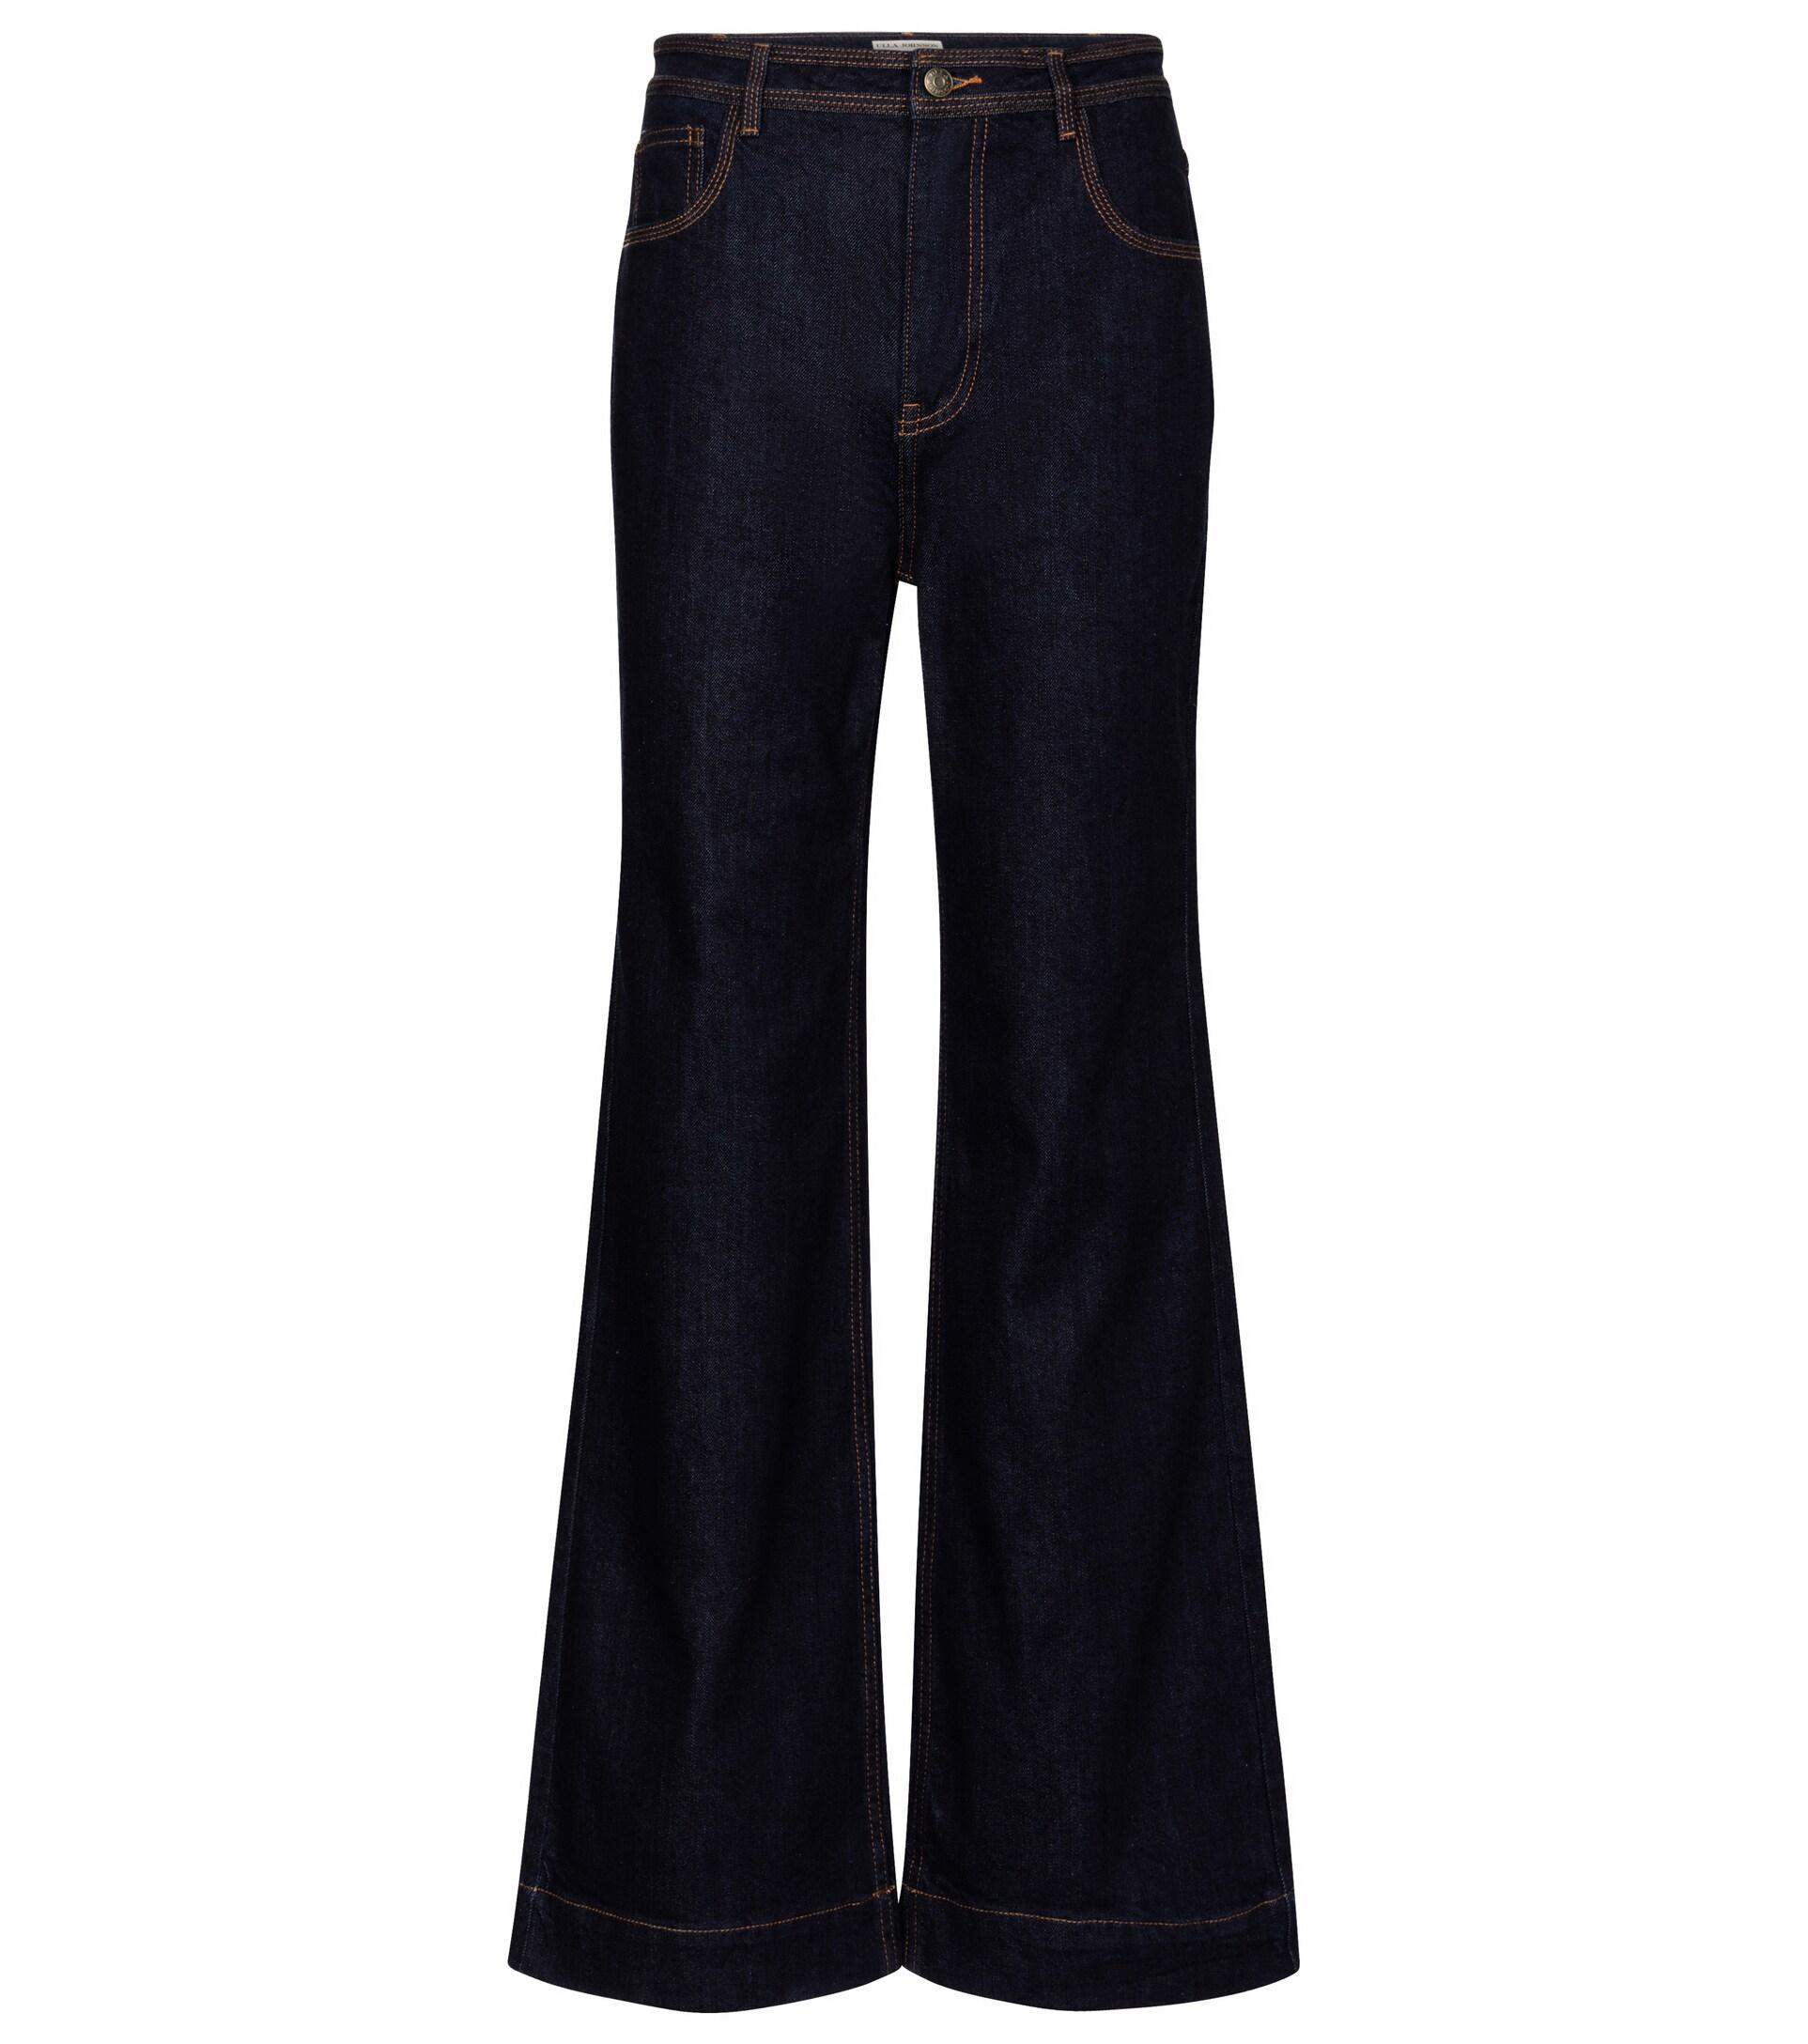 Damen Bekleidung Jeans Ausgestellte Jeans Ulla Johnson Denim High-Rise Jeans Theo mit weitem Bein in Blau 